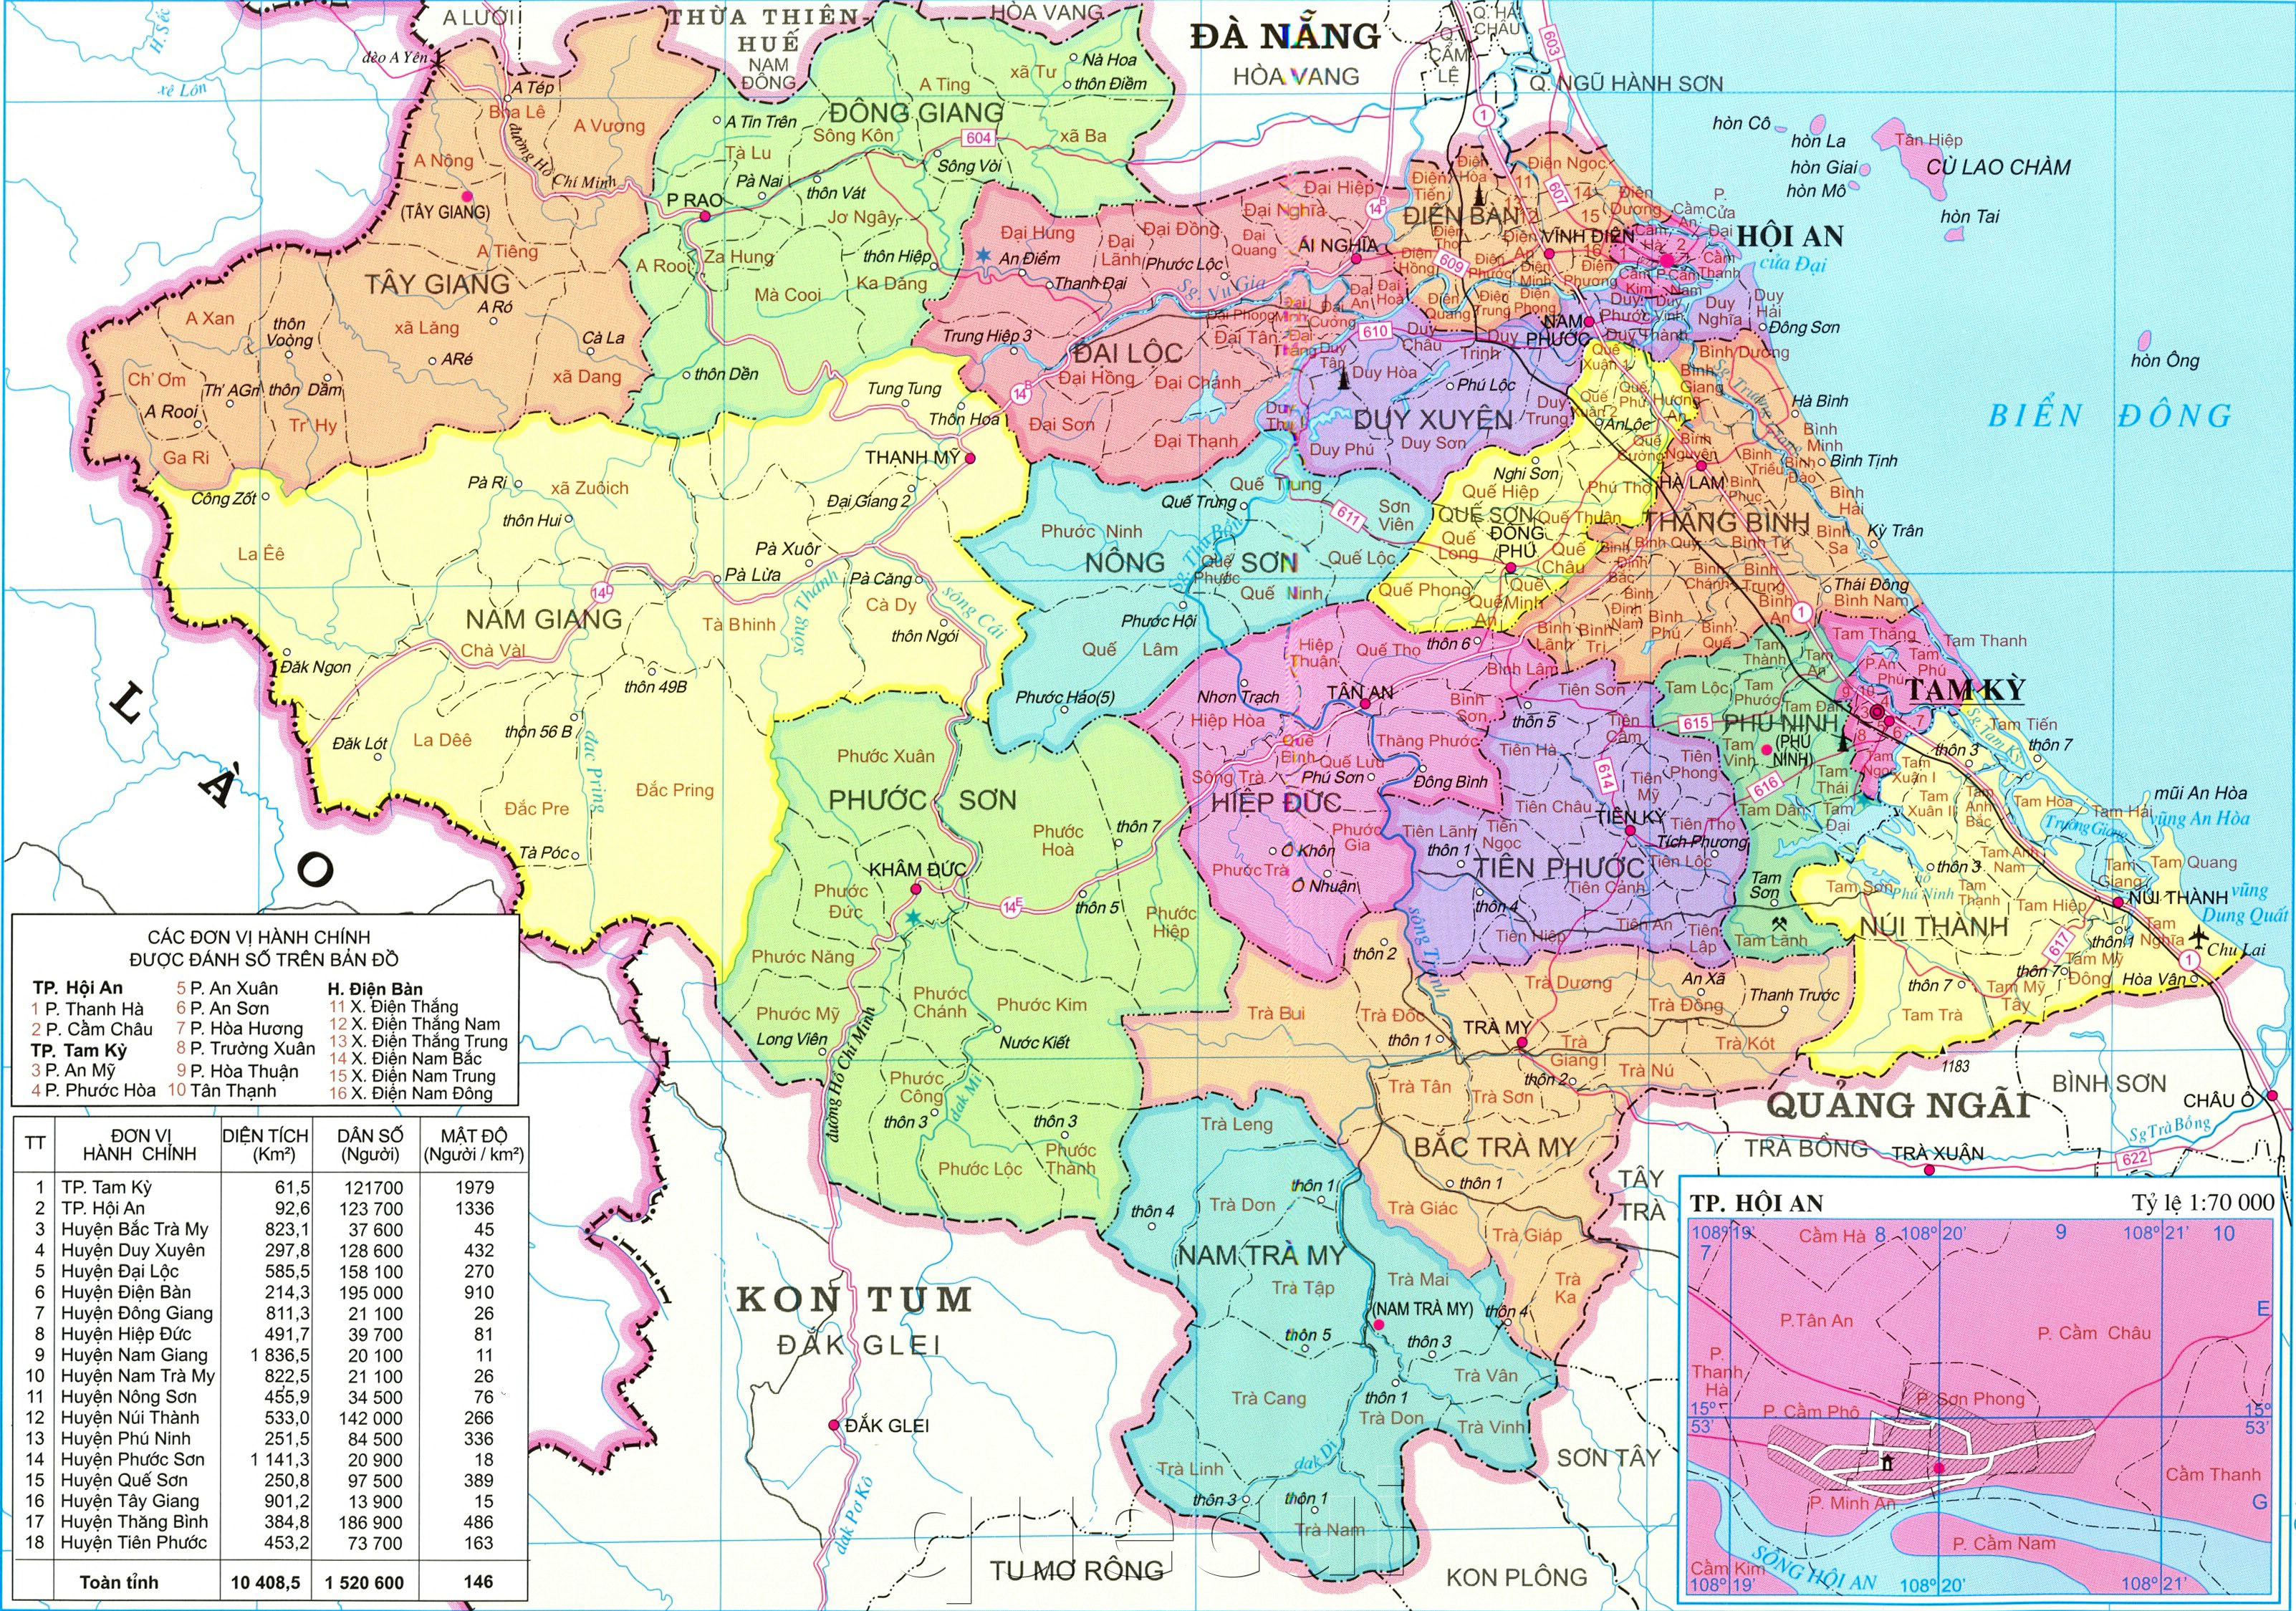 Bản đồ hành chính tỉnh Quảng Nam: Với bản đồ hành chính tỉnh Quảng Nam, bạn sẽ tìm thấy thông tin chính xác về cơ cấu hành chính, các địa danh thông dụng và hệ thống giao thông tại đây. Hãy sẵn sàng khám phá vùng đất này với một lịch trình chuẩn xác.